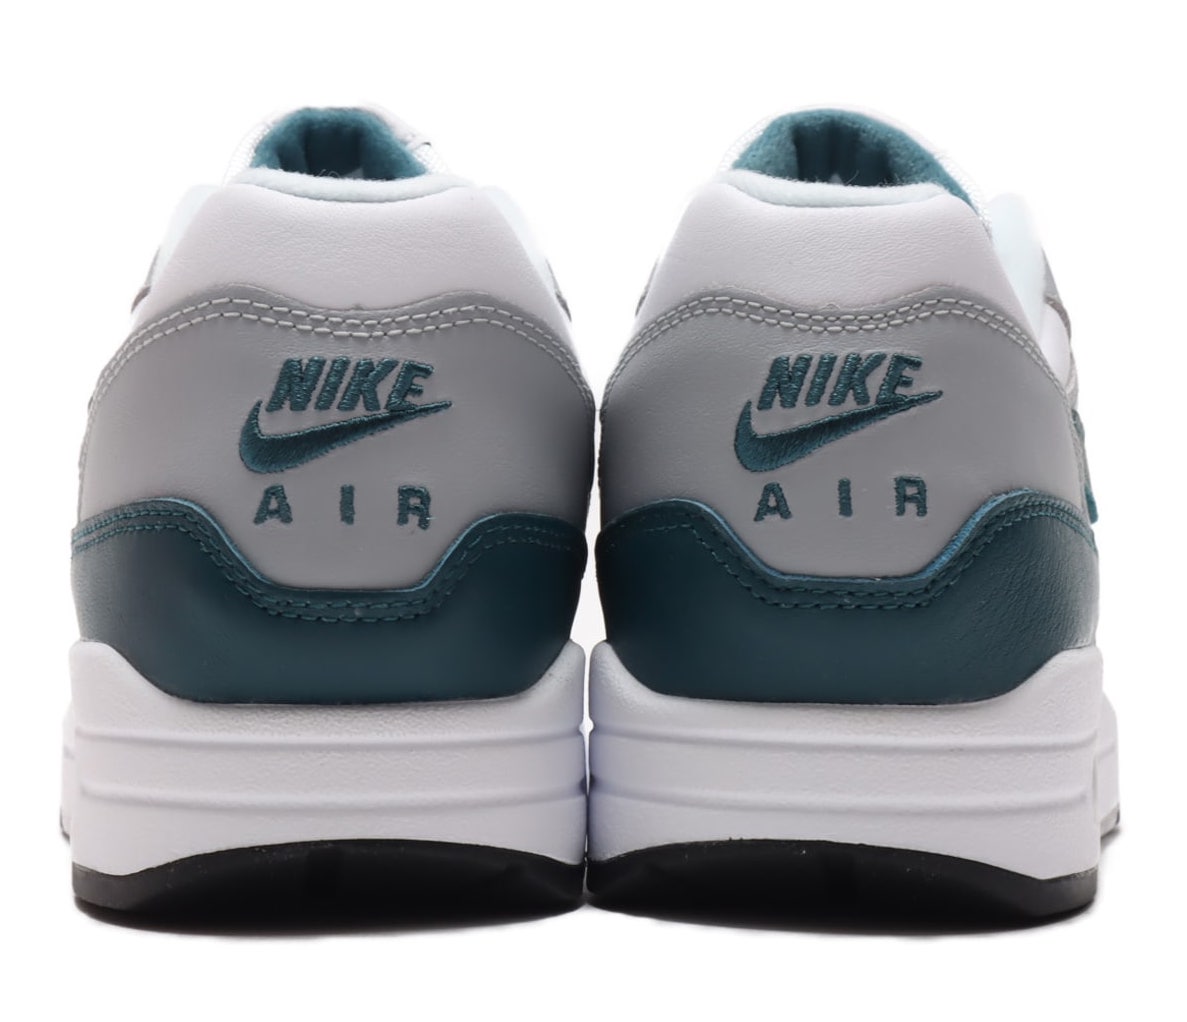 Swoosh, Nike Air Max 1“ Dark Teal Green”, Nike Air Max 1, Nike Air Max, Nike Air, NIKE, Air Max 1, Air Max